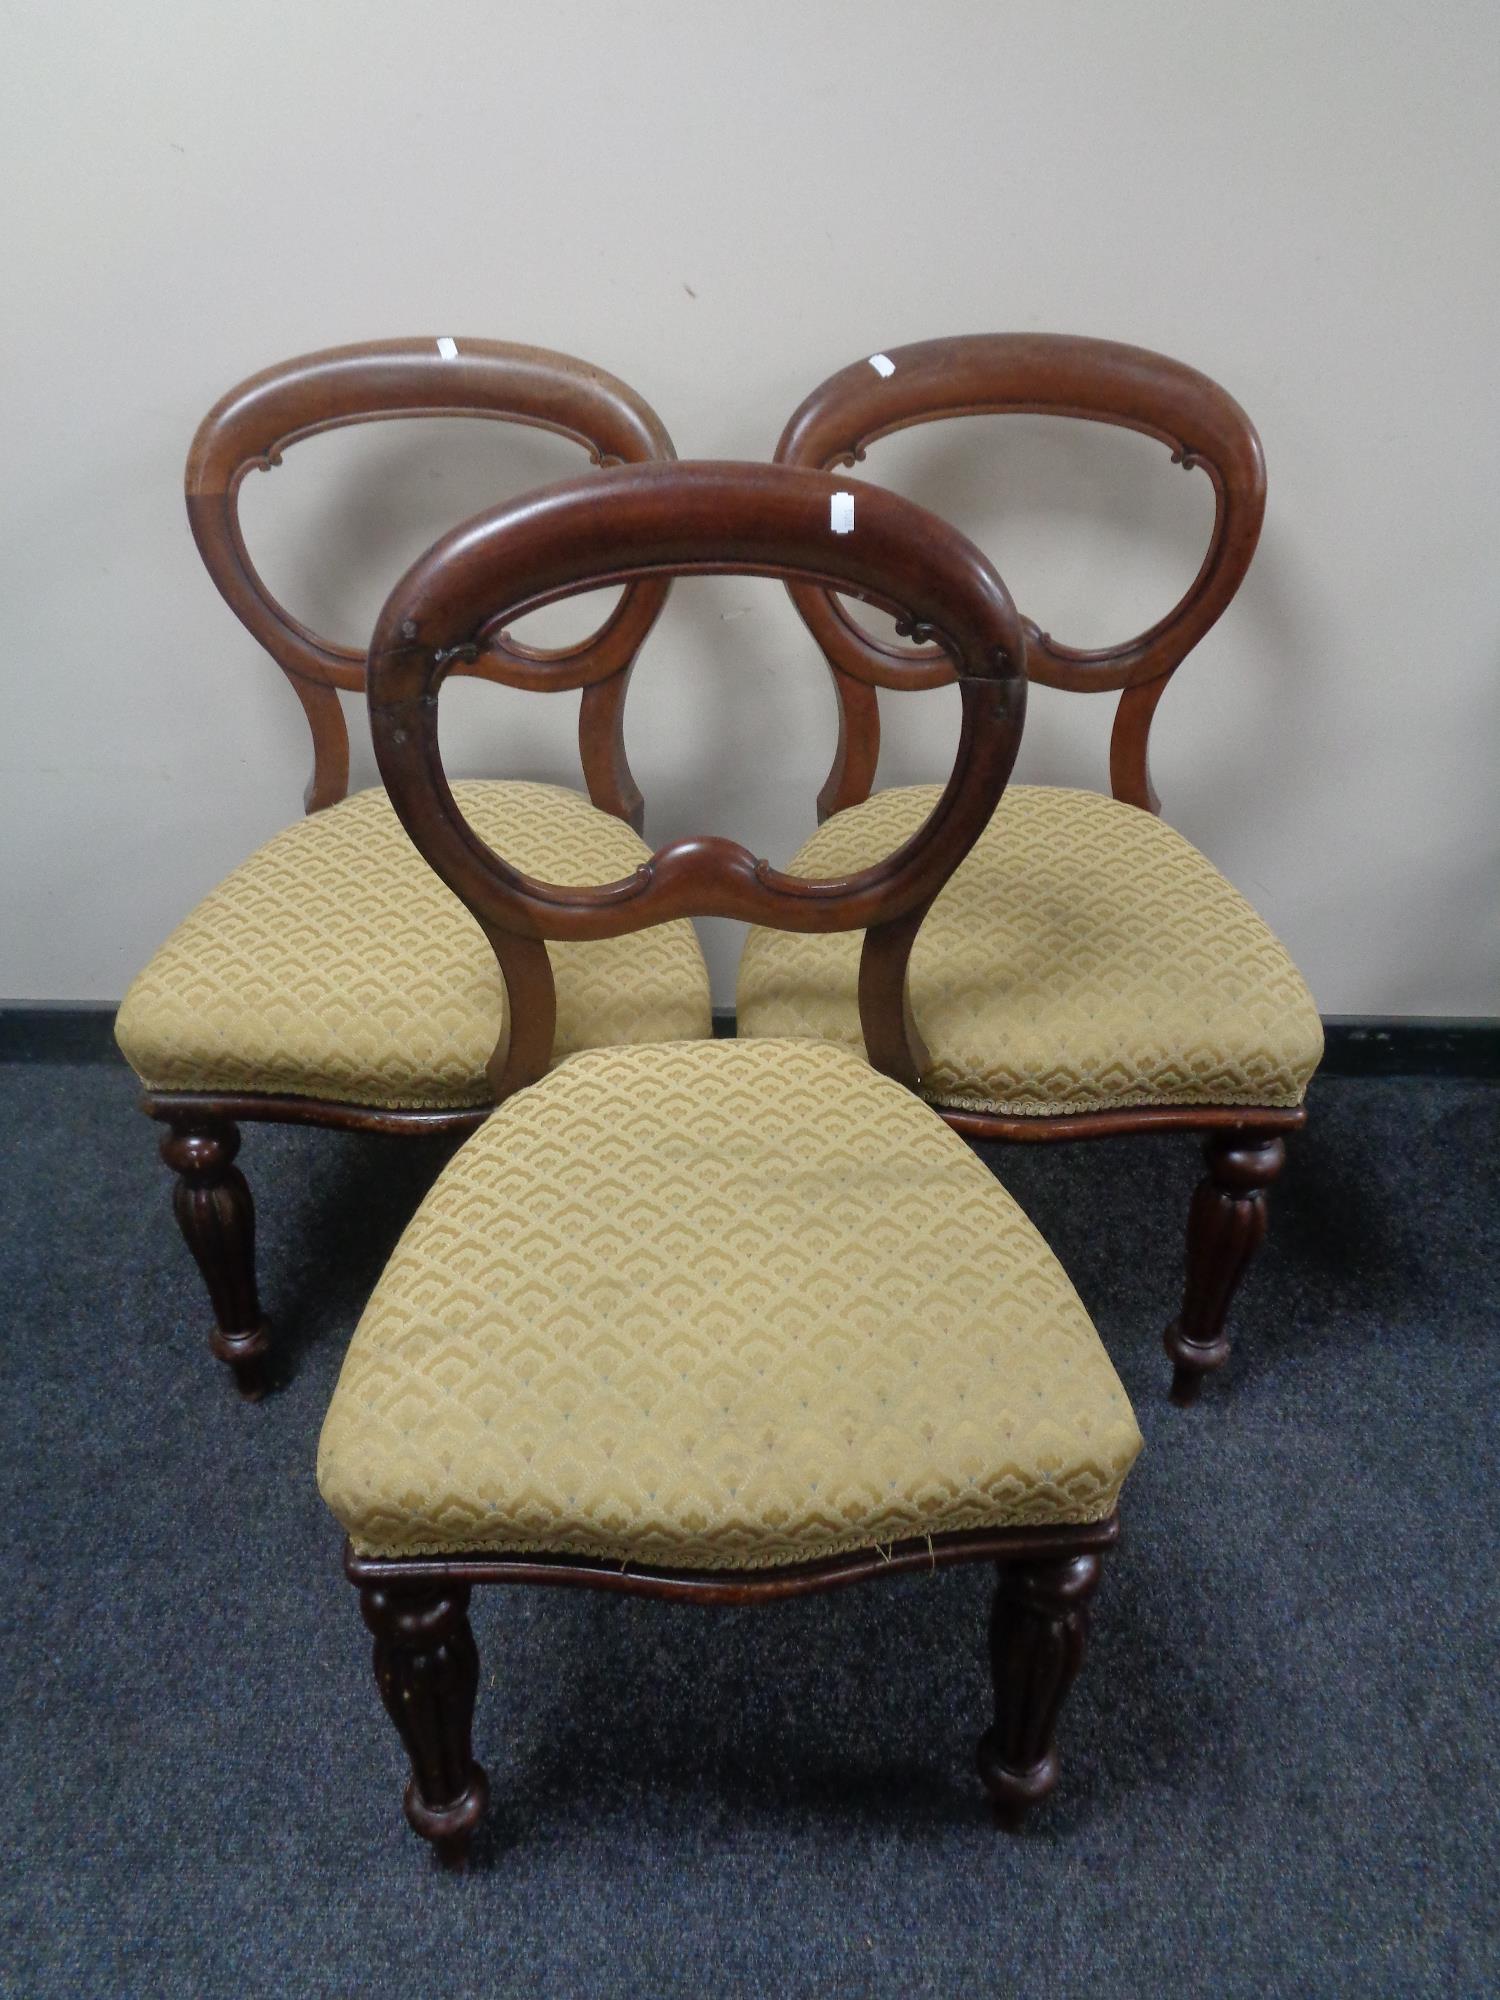 A set of three Victorian mahogany balloon backed chairs